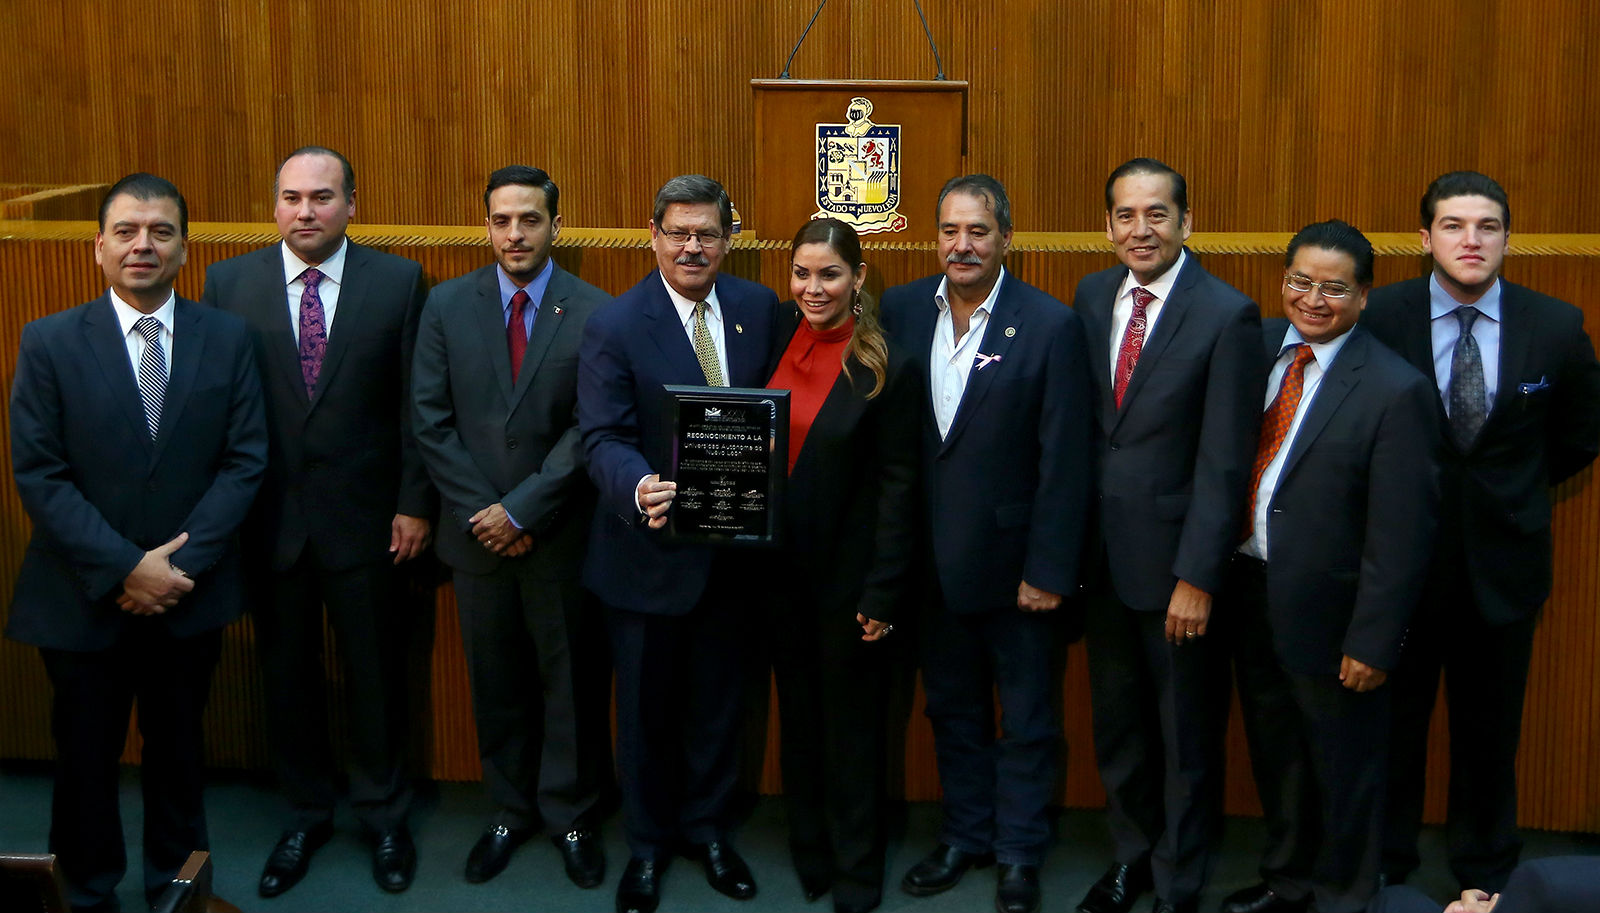 Congreso de Nuevo León honra a la UANL por aniversario